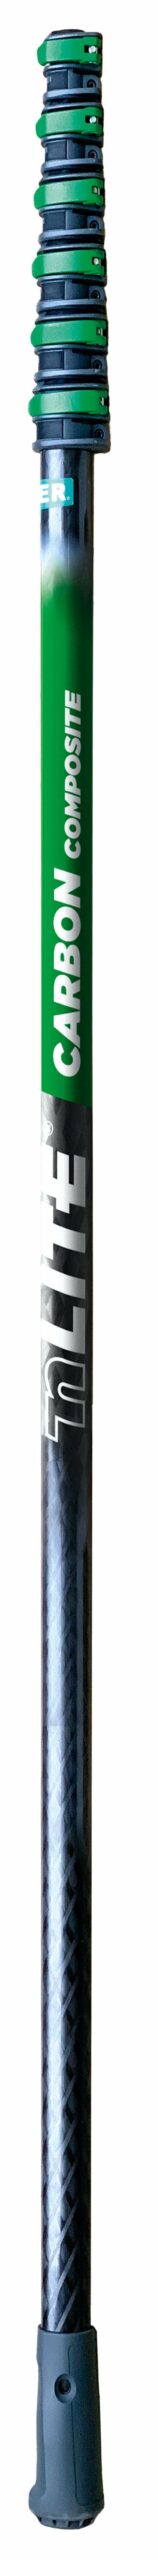 UNGER Carbon Composite Master Pole 6 Section – 8.6M (U-CC85T)